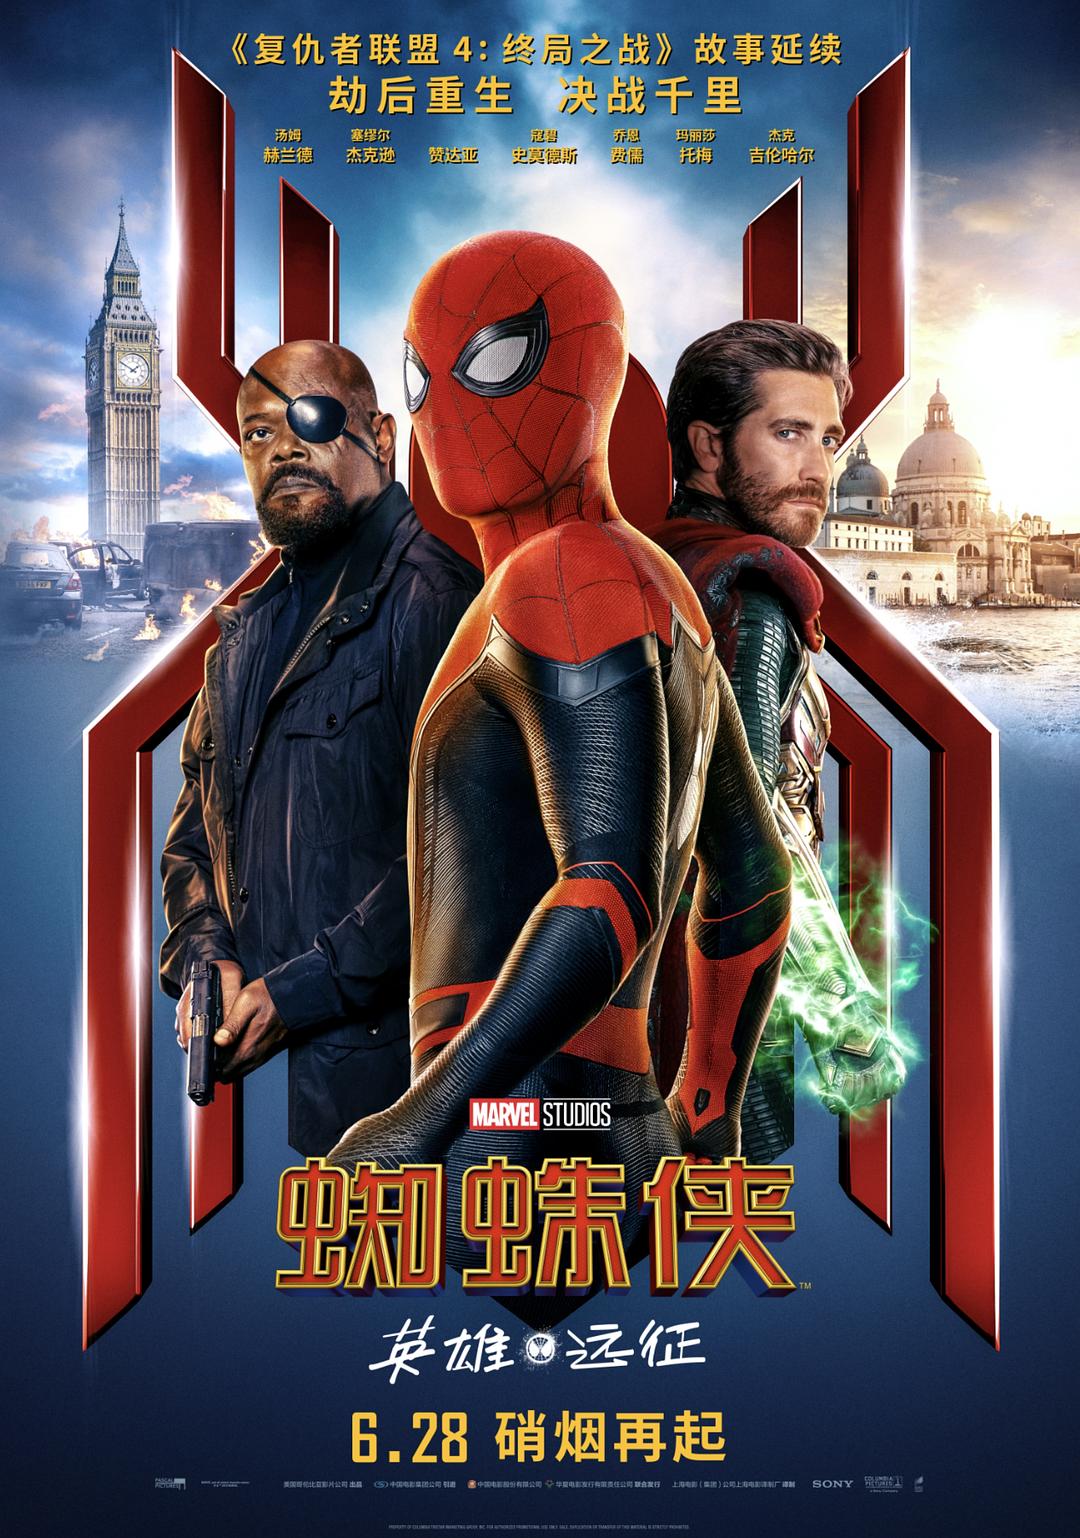 蜘蛛侠:豪杰远征/新蜘蛛侠2 Spider-Man.Far.from.Home.2019.1080p.BluRay.AVC.DTS-HD.MA.7.1-FGT 42.10GB-1.png